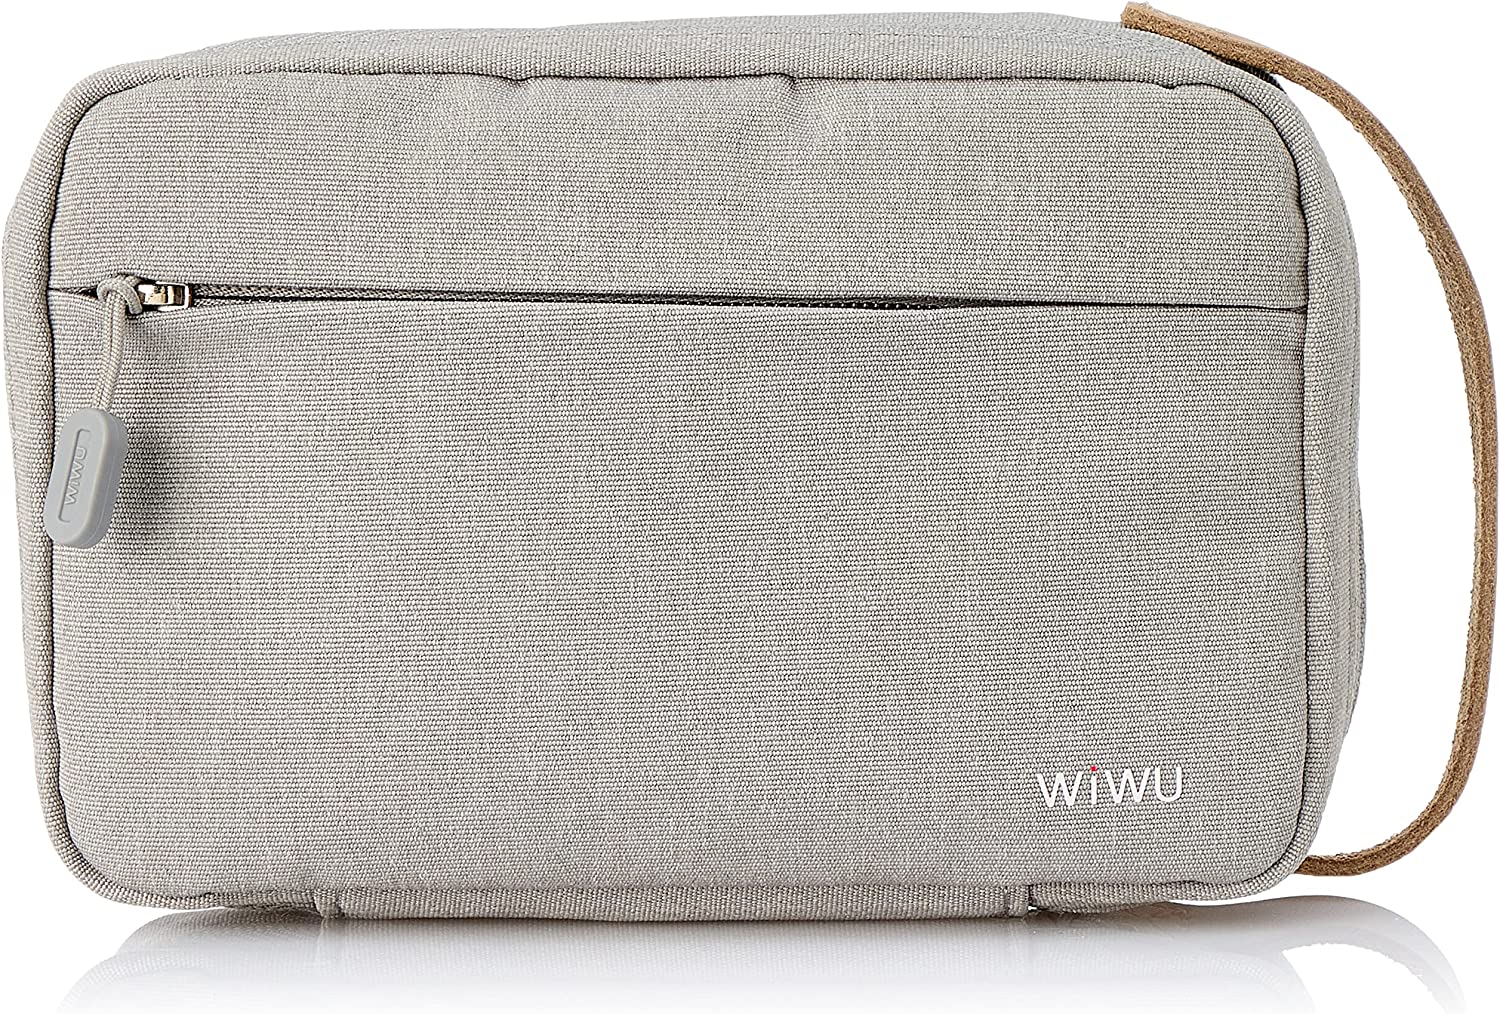 Wiwu Cozy Storage Bag - Gray